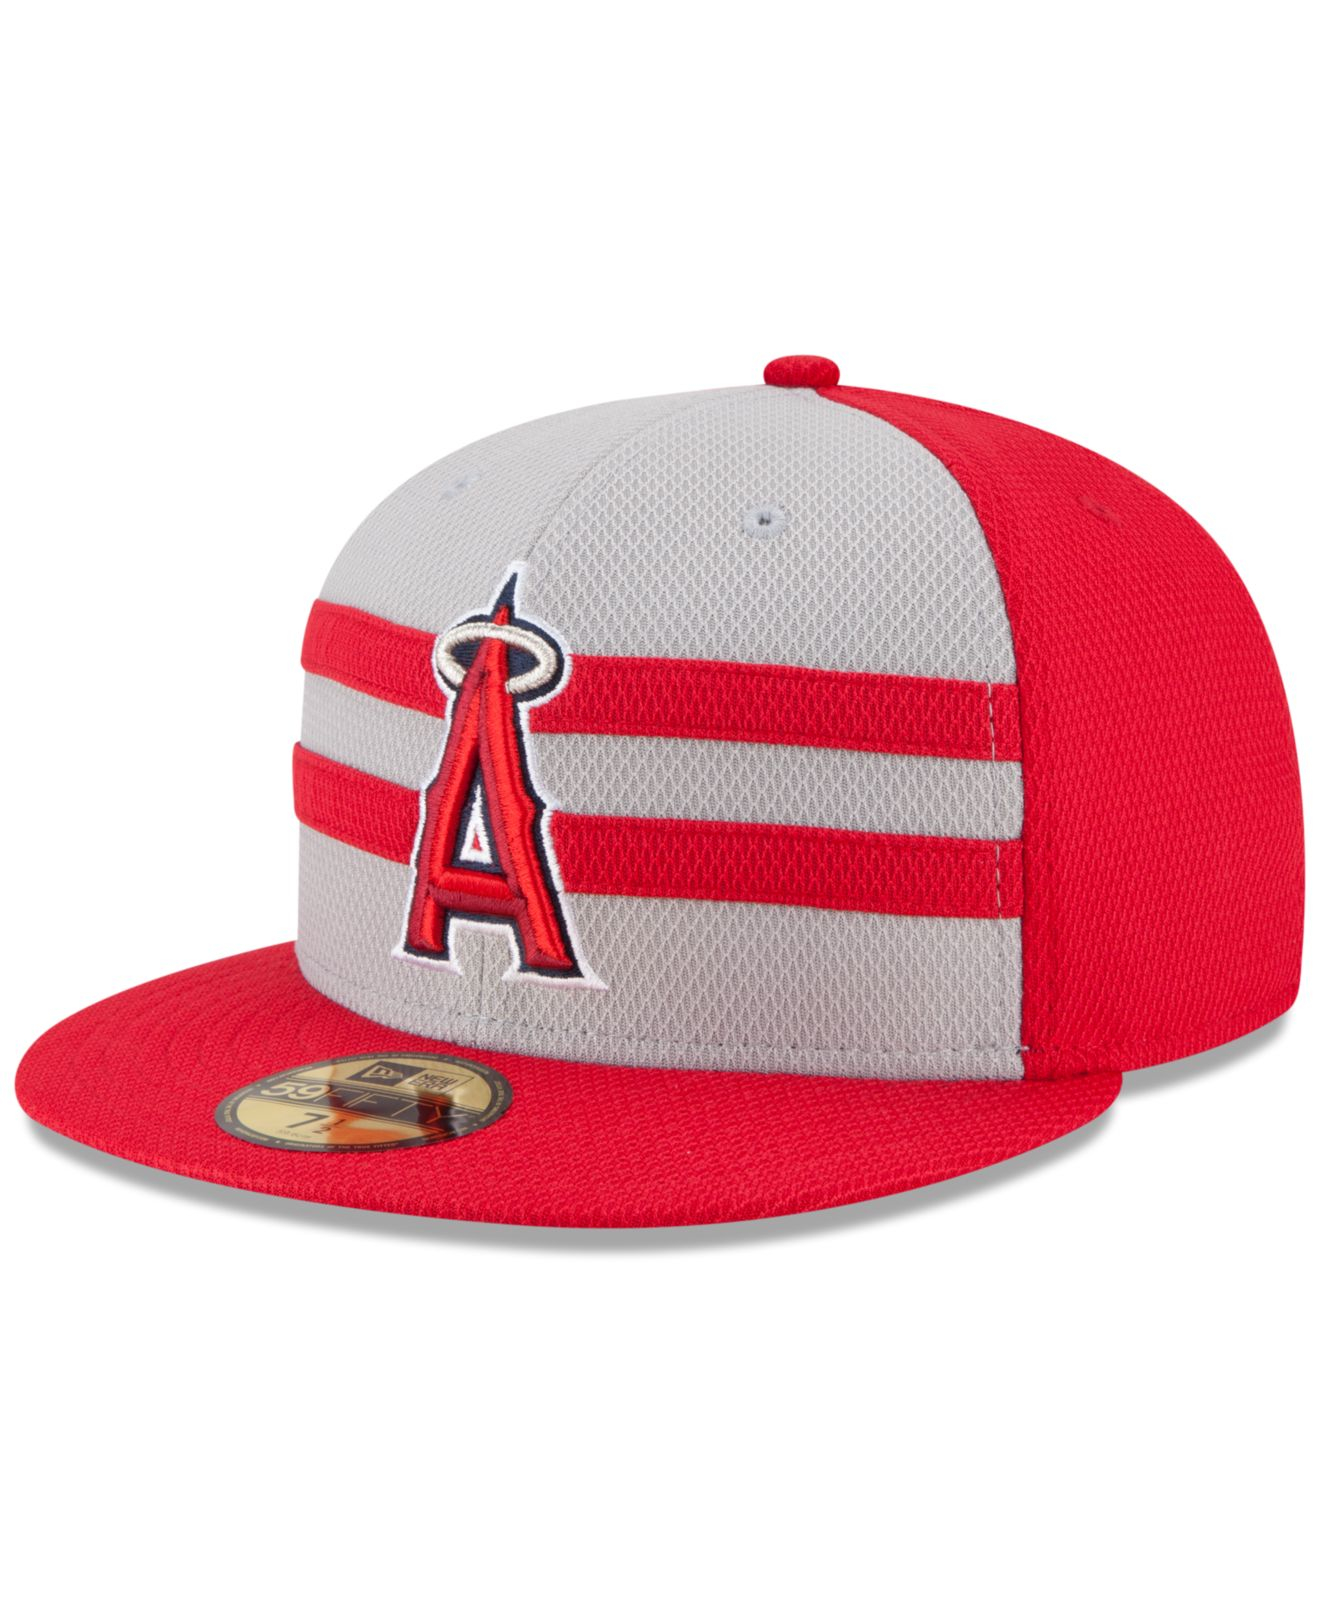 Майка New era MLB Anaheim Angels. Off your hat